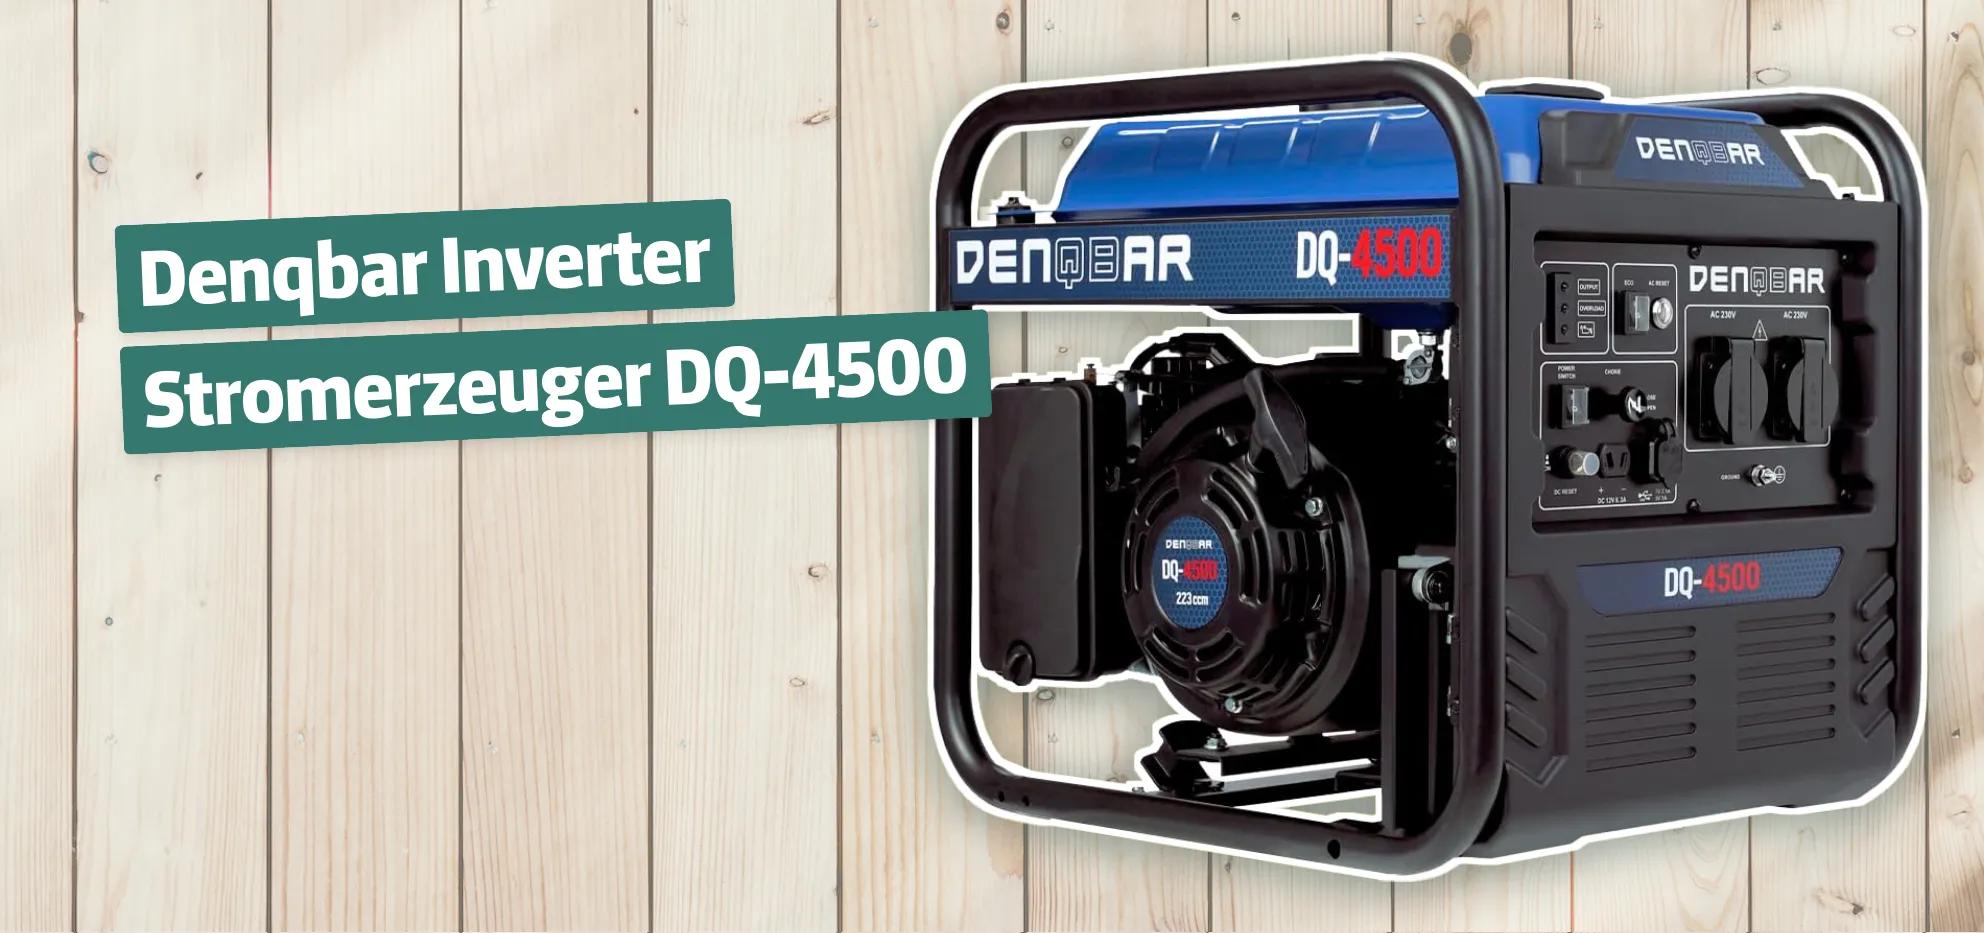 Denqbar Inverter Stromerzeuger DQ-4500 Testbericht & Erfahrungen